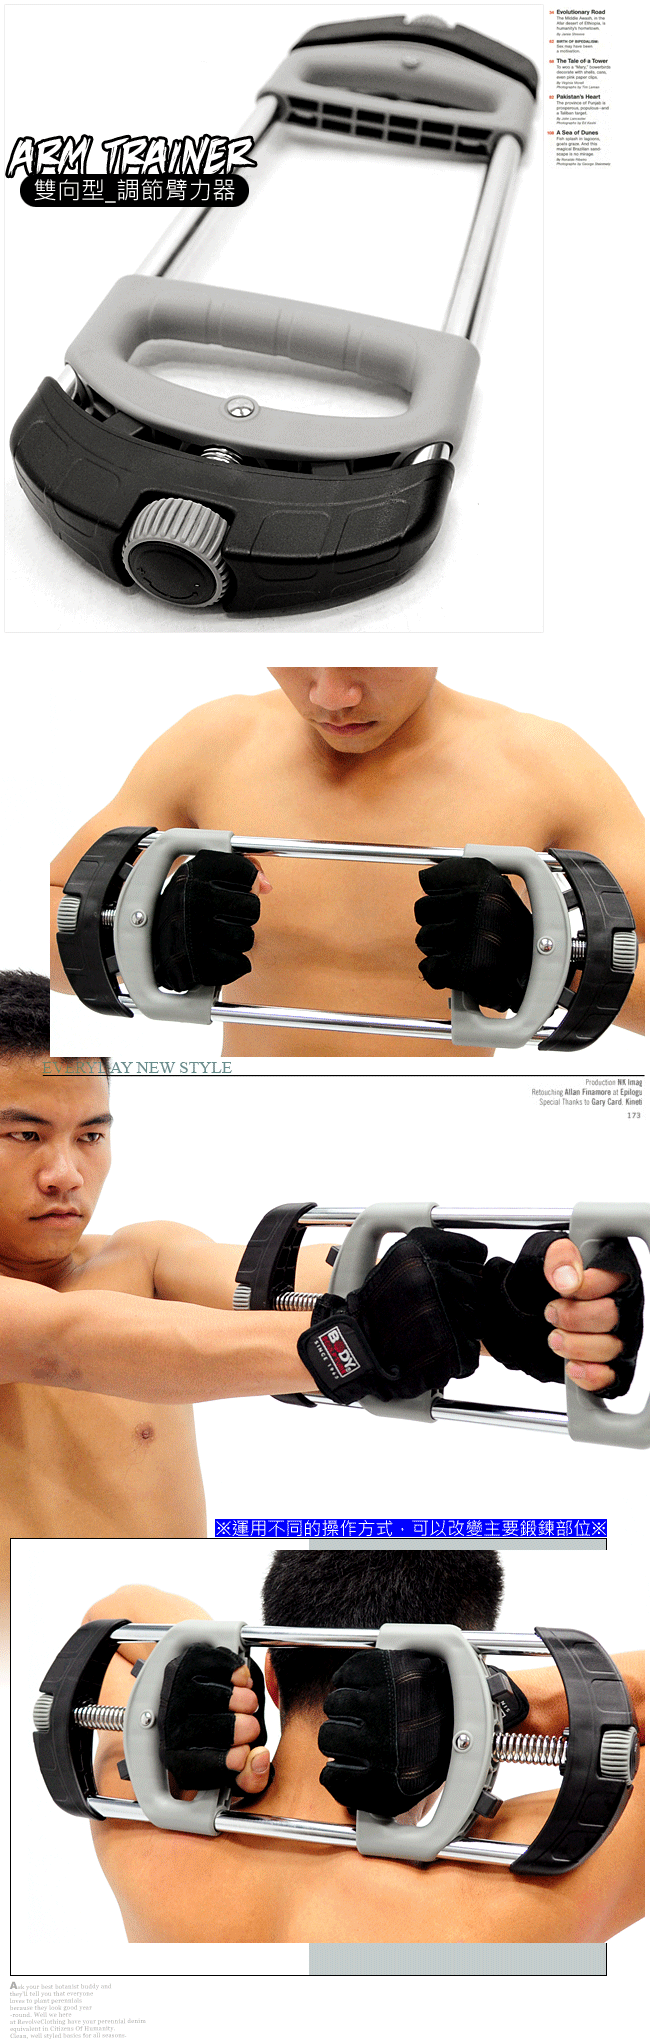 台灣製造ARM TRAINER臂力訓練器(20~60公斤調節)手臂熱健臂器.手腕力訓練器腕力器 2